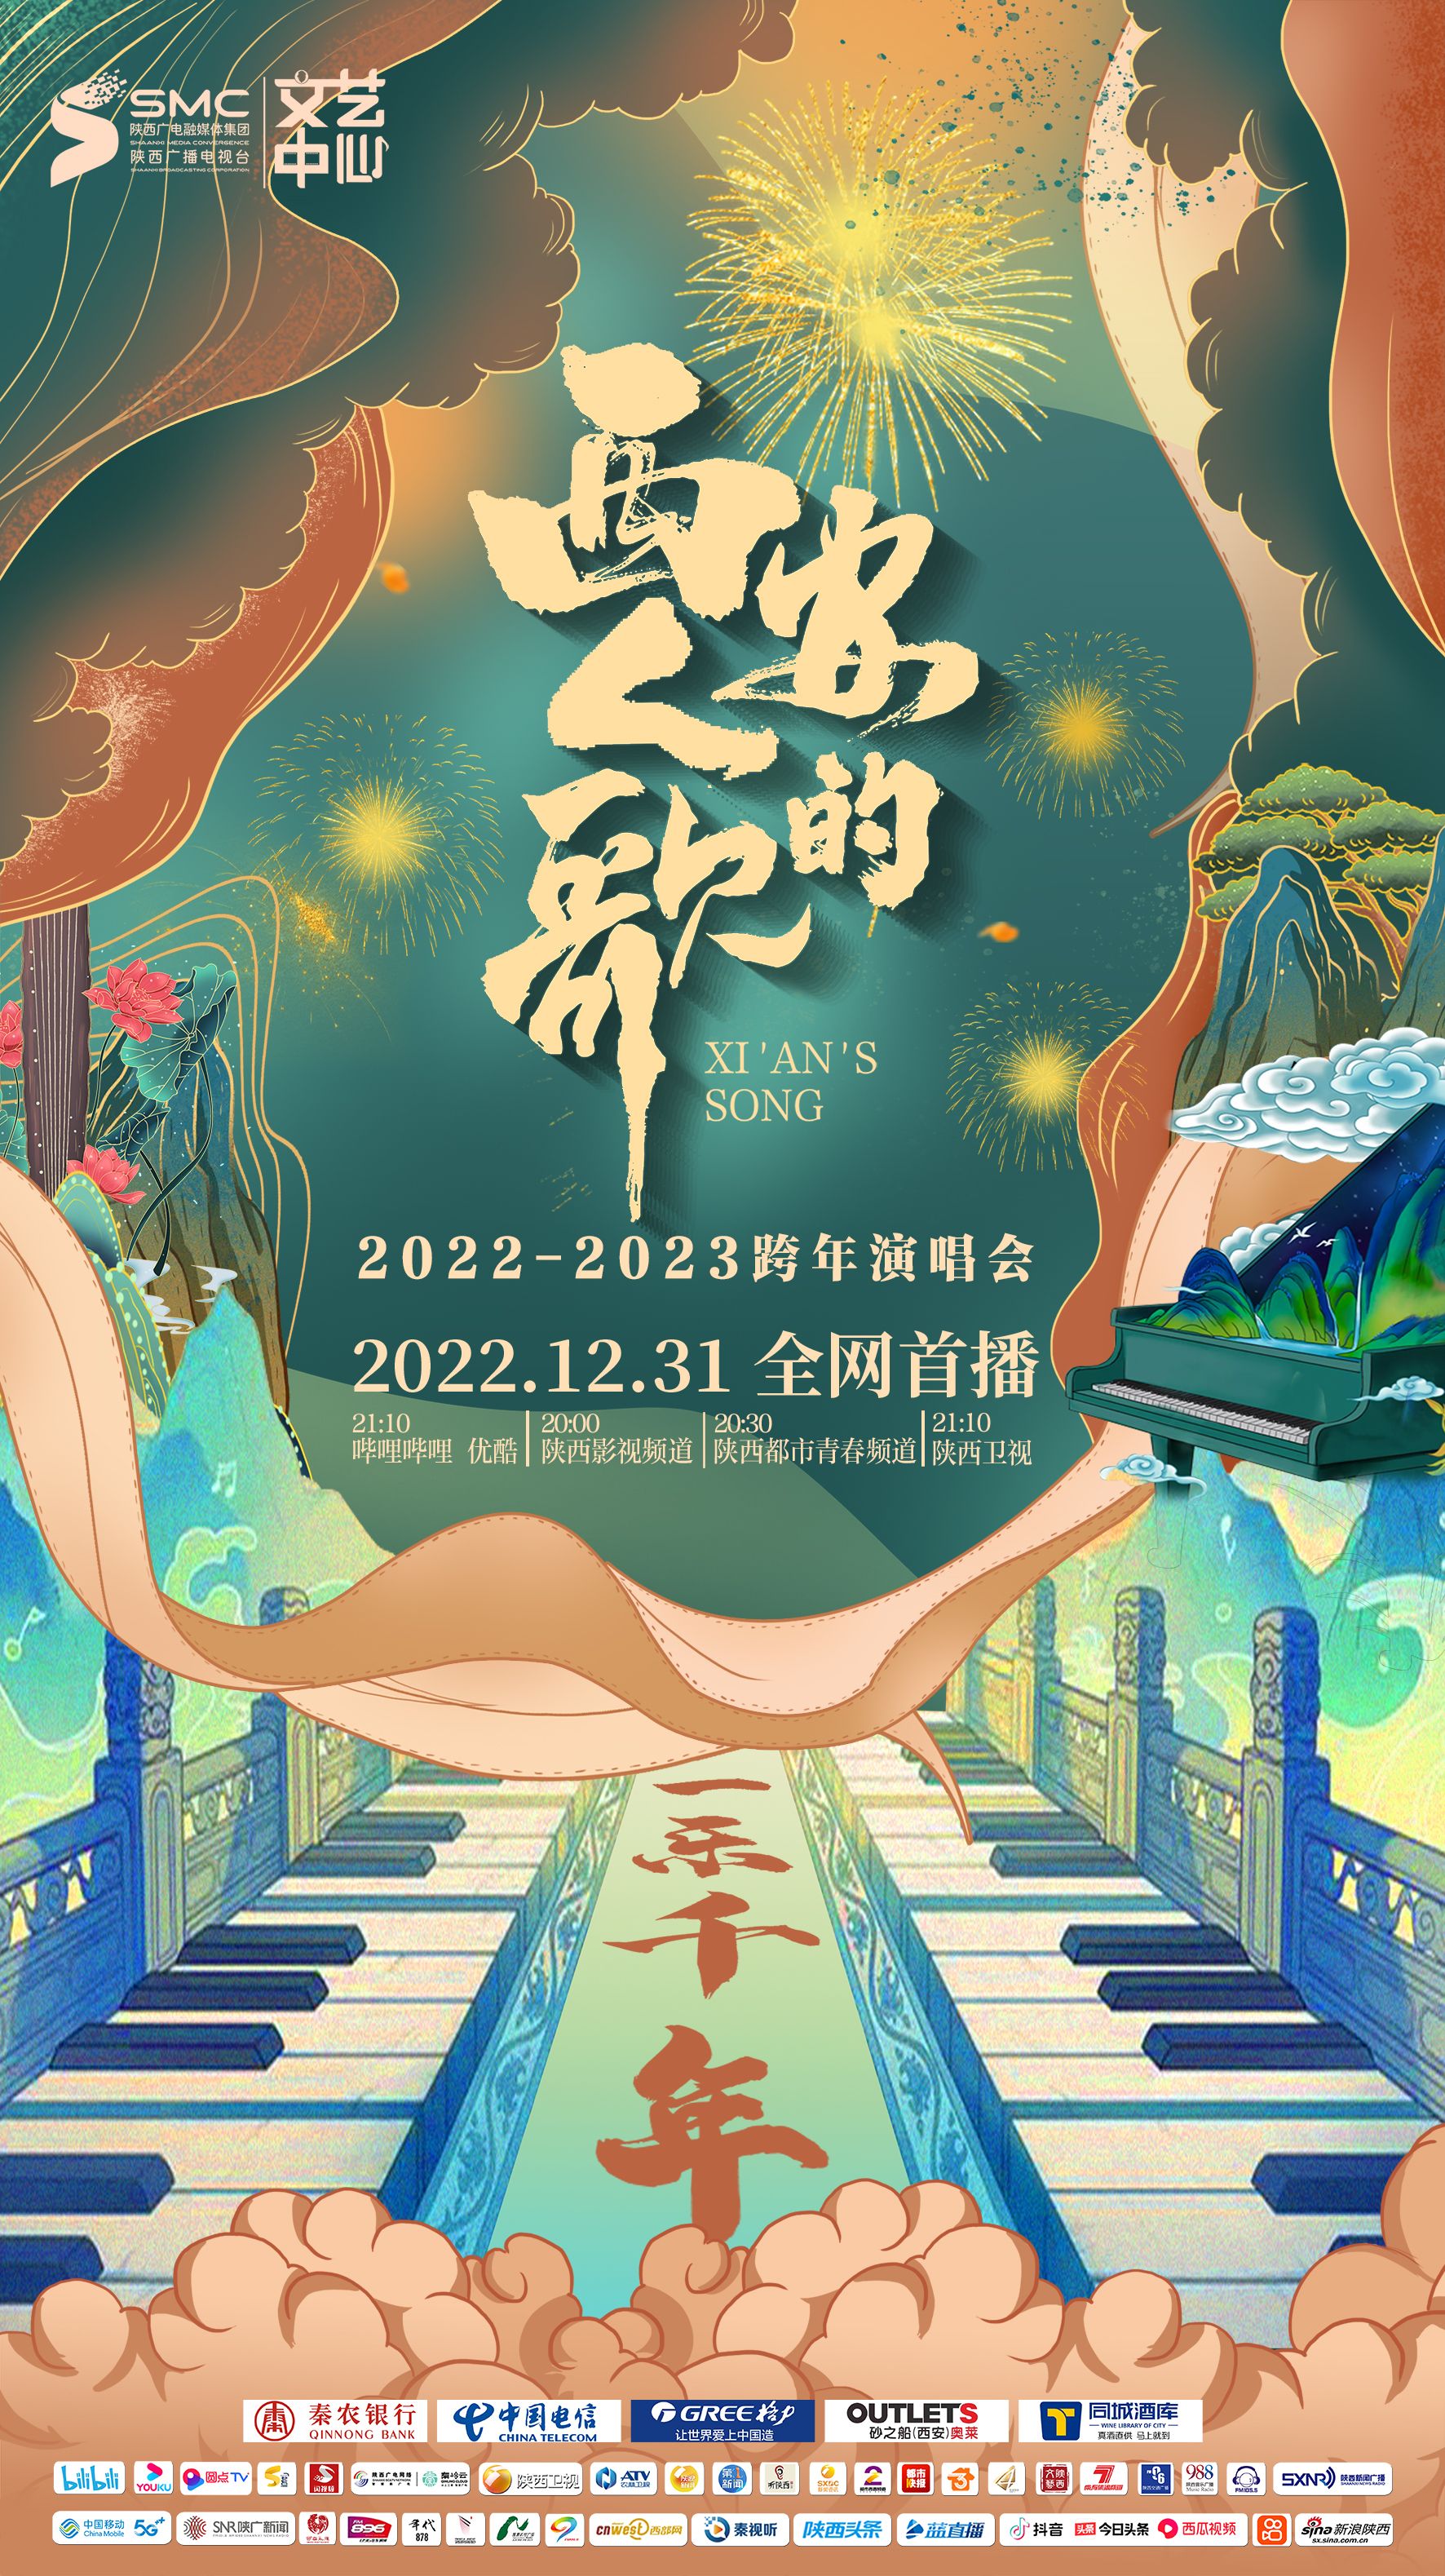 西安人的歌·一乐千年跨年演唱会2023在线观看地址及详情介绍